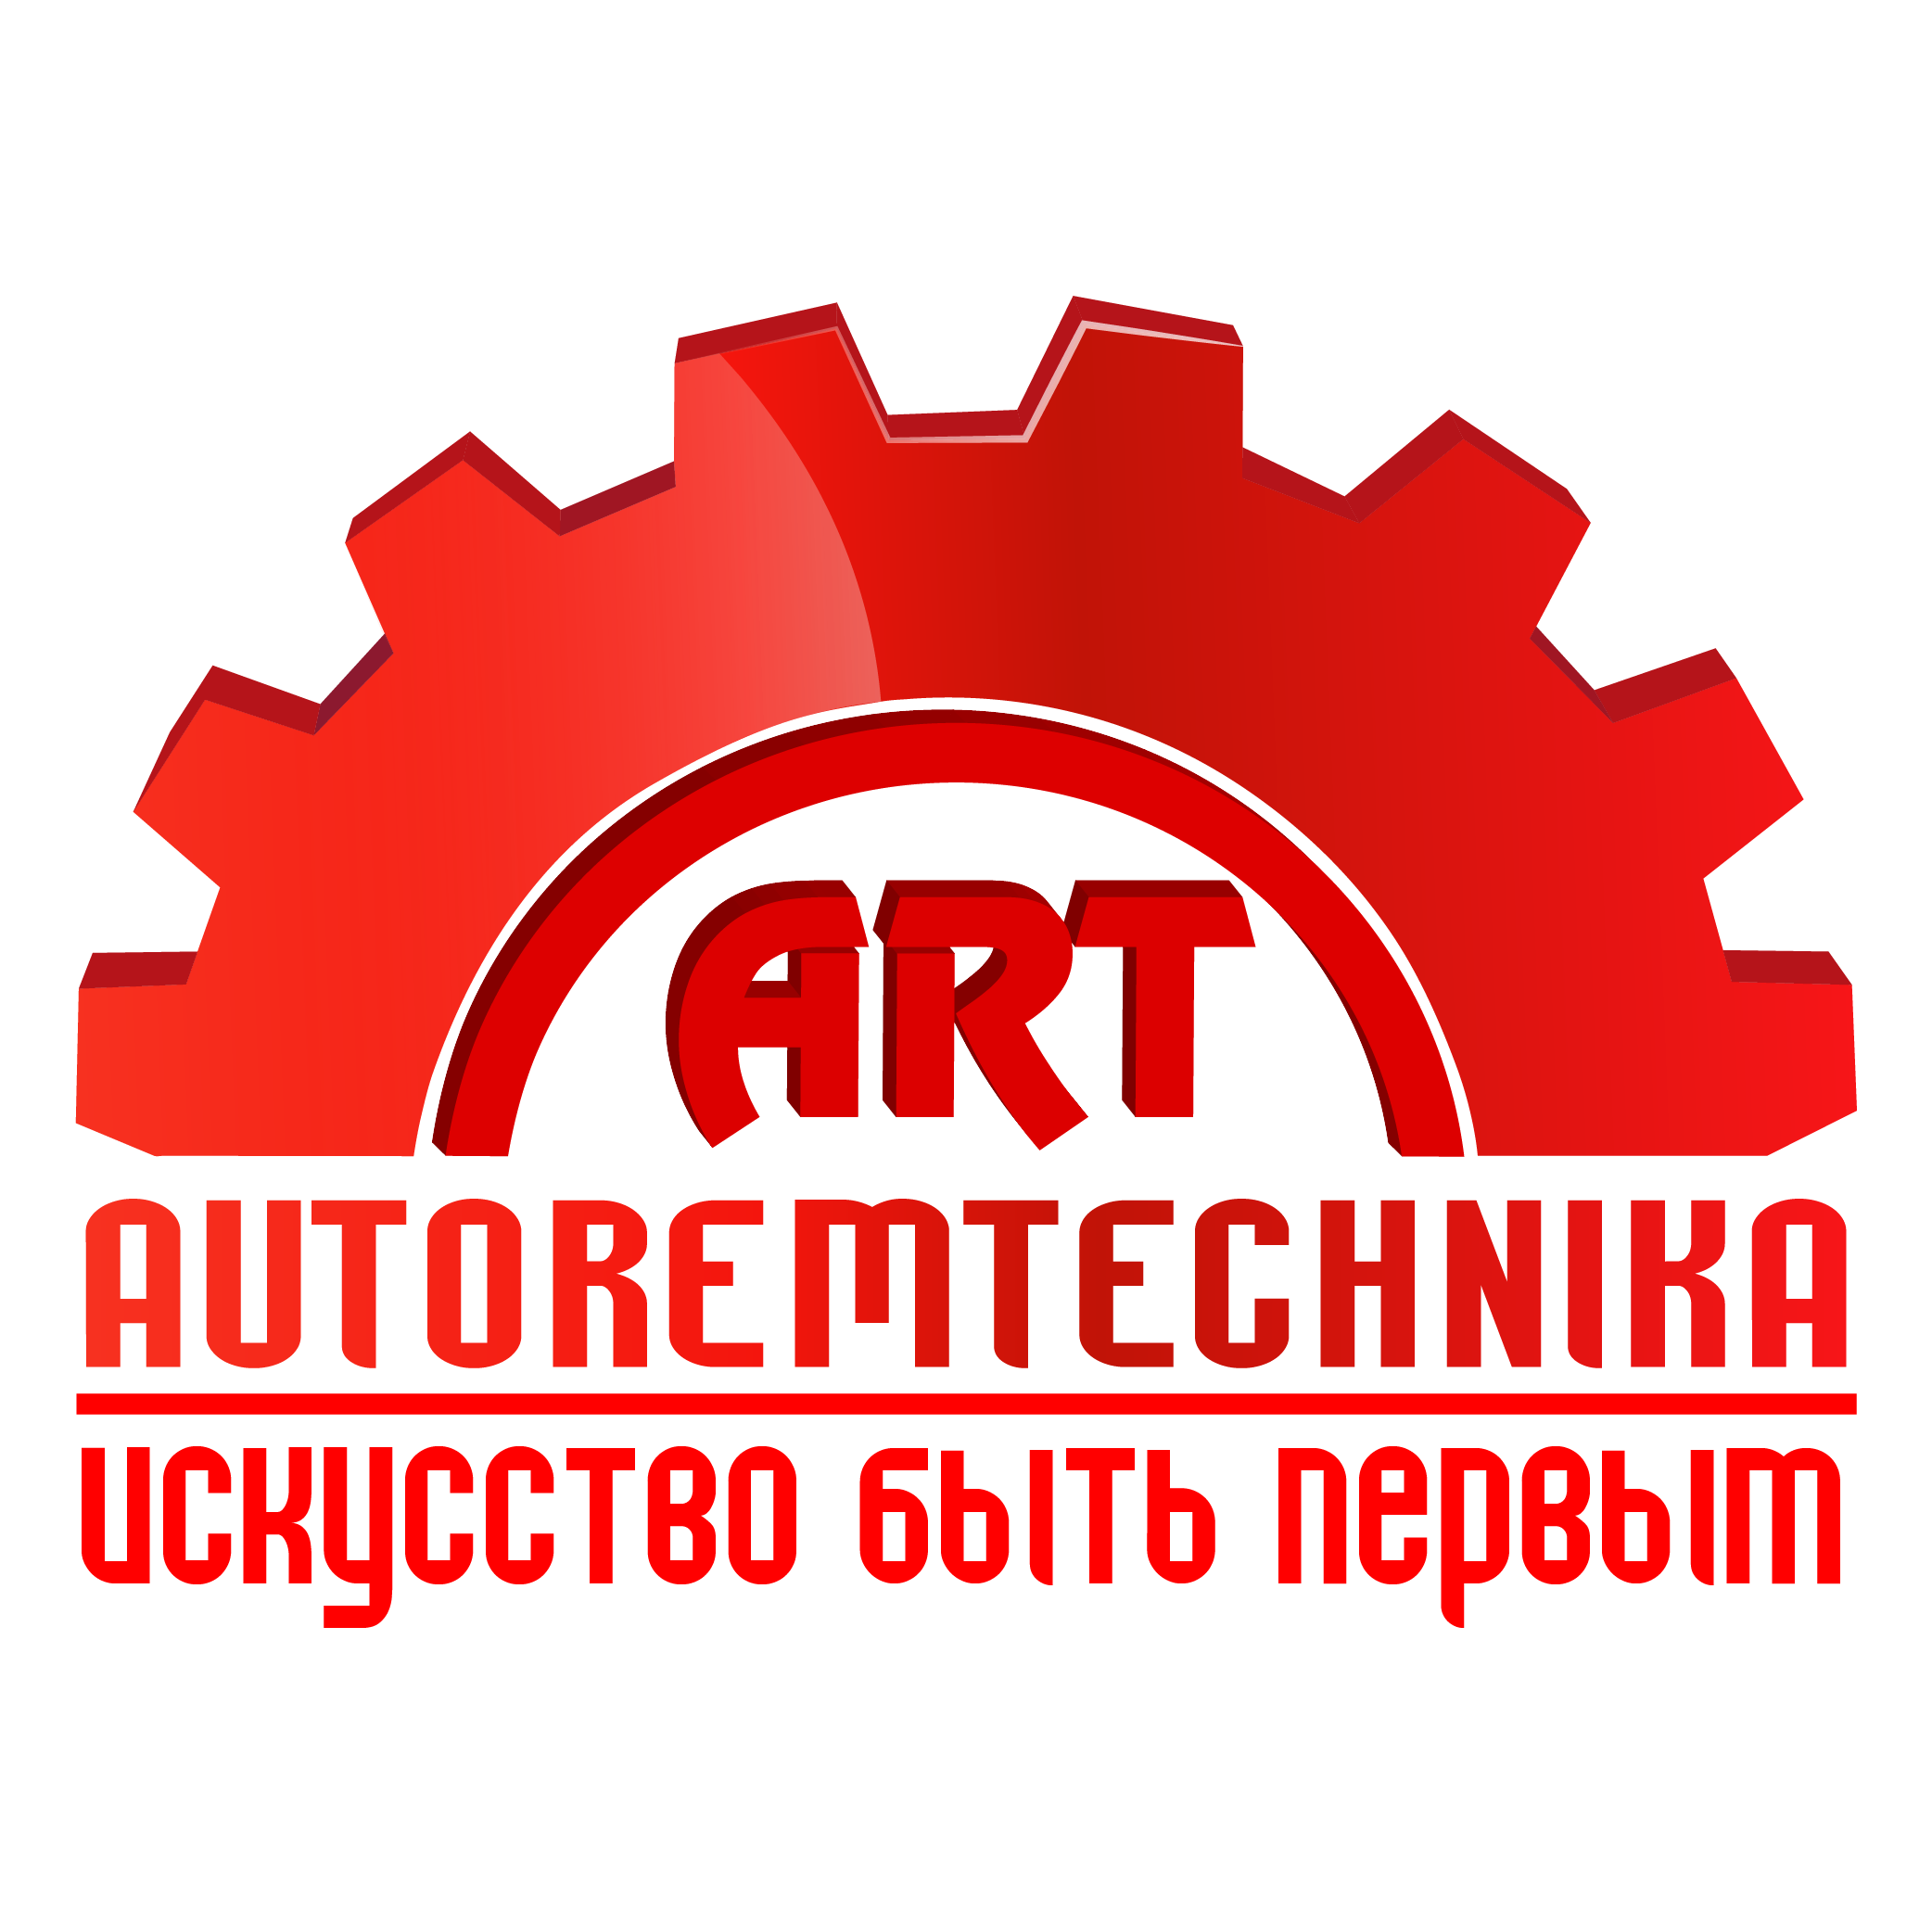 АВТОРЕМТЕХНИКА - оборудование для автосервиса и шиномонтажа